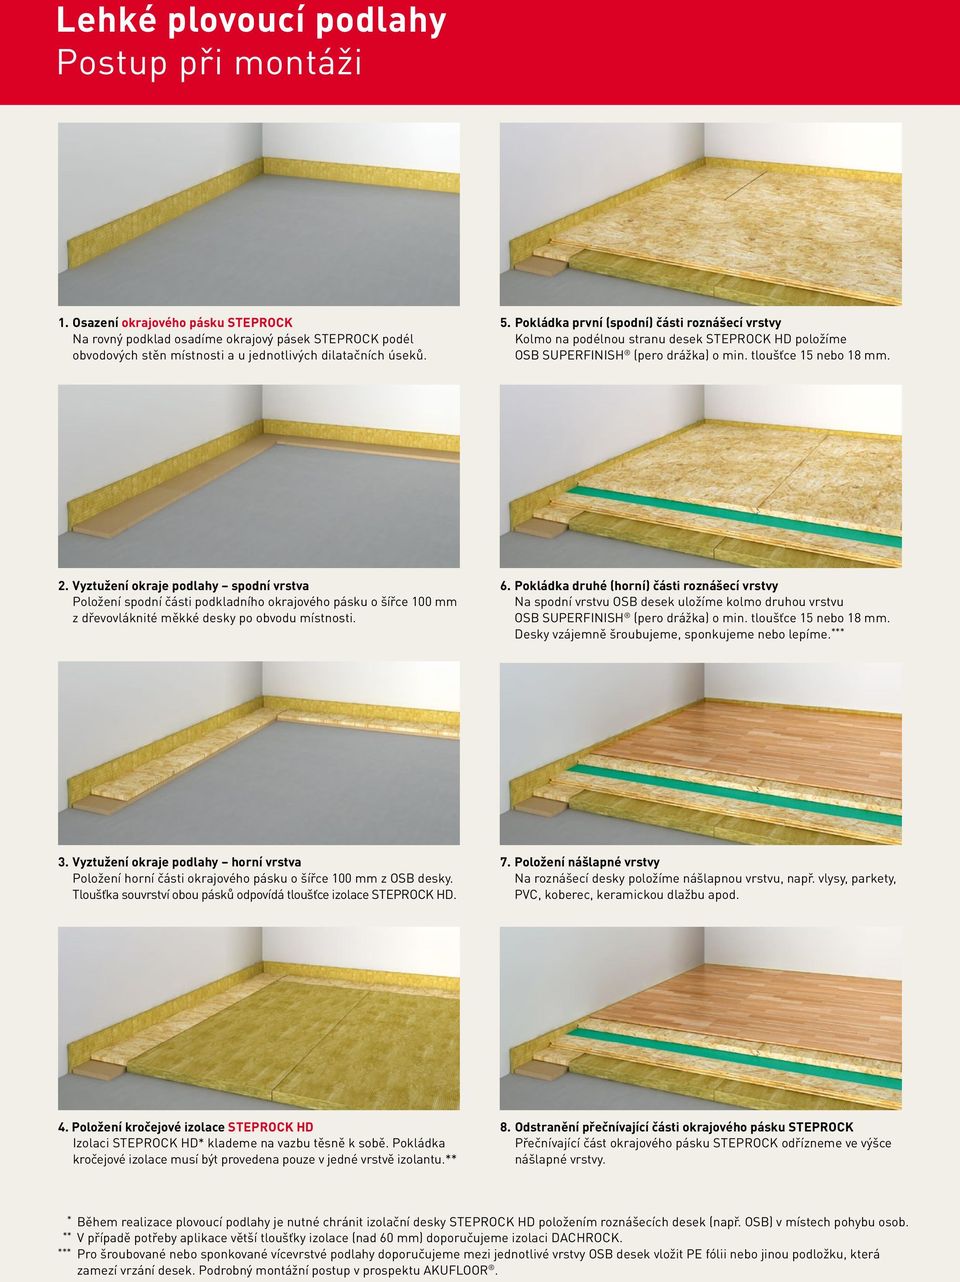 Vyztužení okraje podlahy spodní vrstva Položení spodní části podkladního okrajového pásku o šířce 100 mm z dřevovláknité měkké desky po obvodu místnosti. 6.